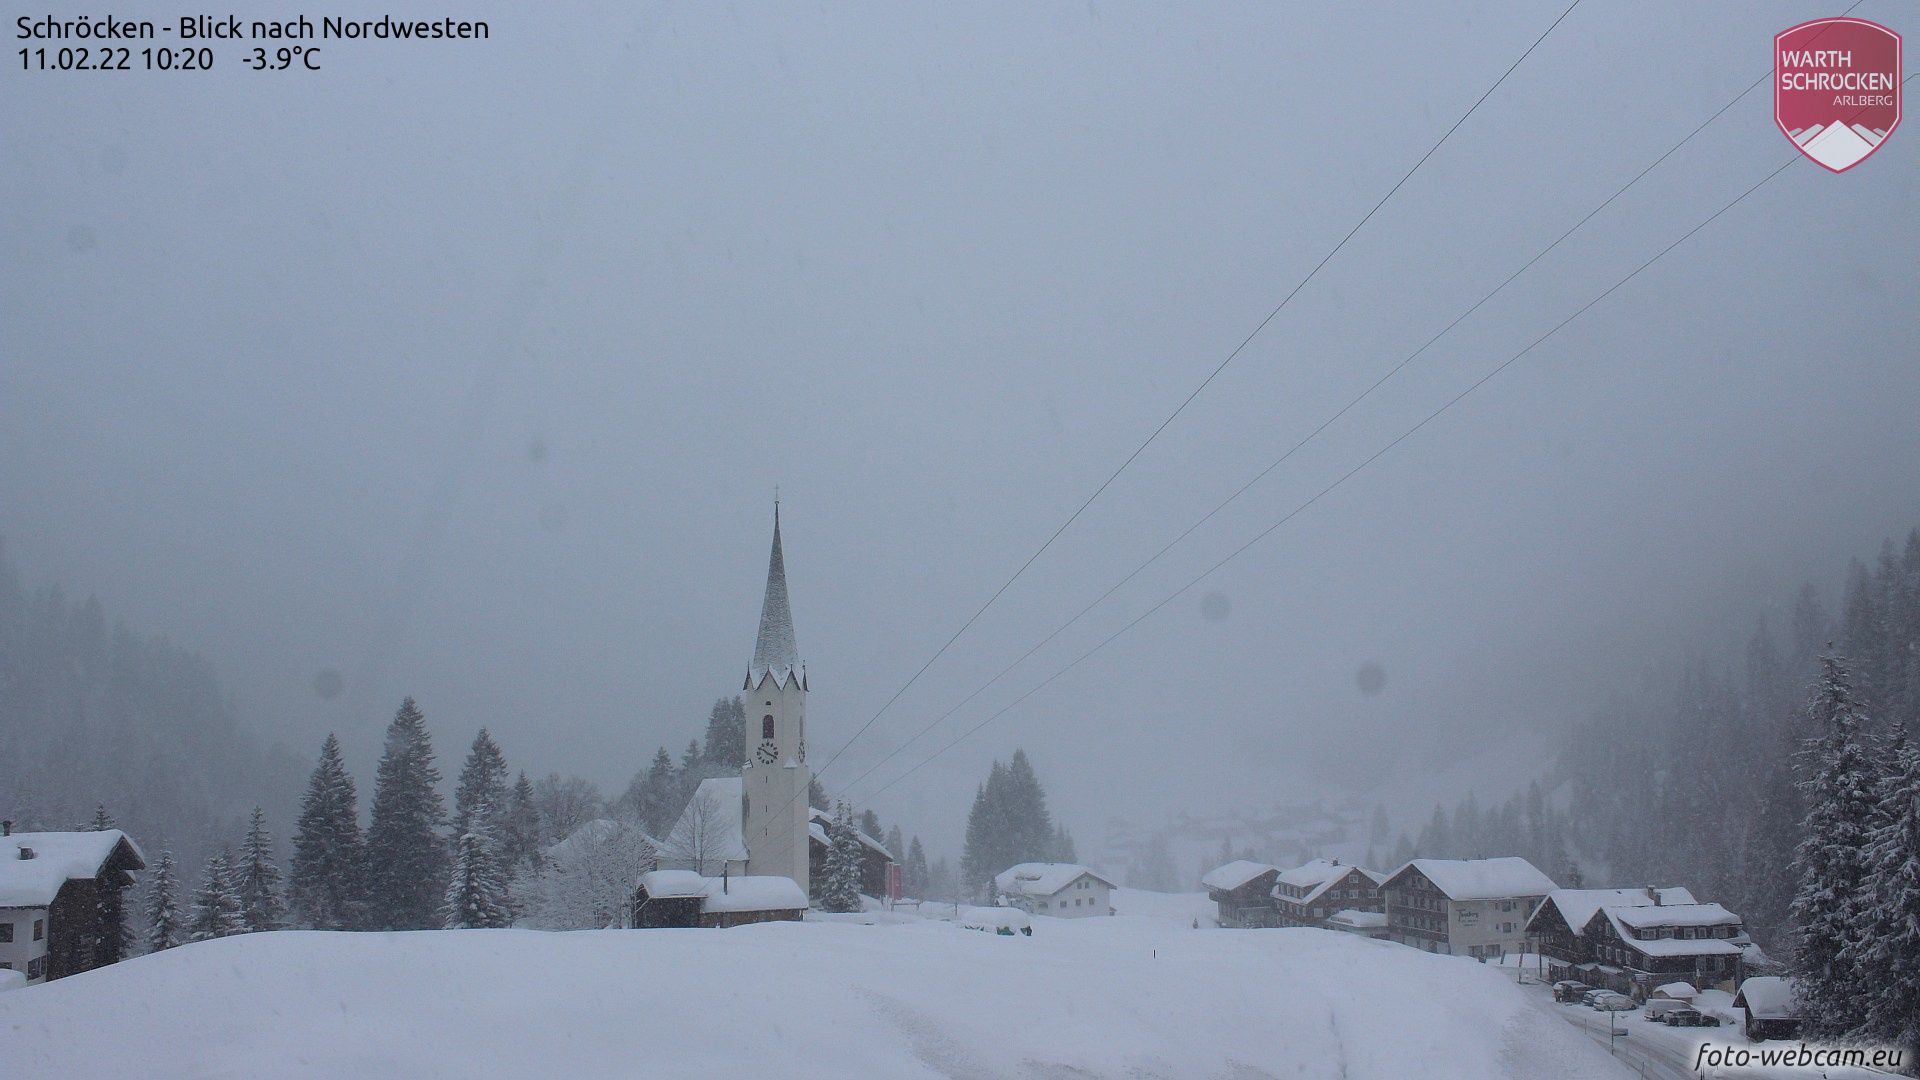 Some fresh snow in Schröcken, Austria (foto-webcam.eu)